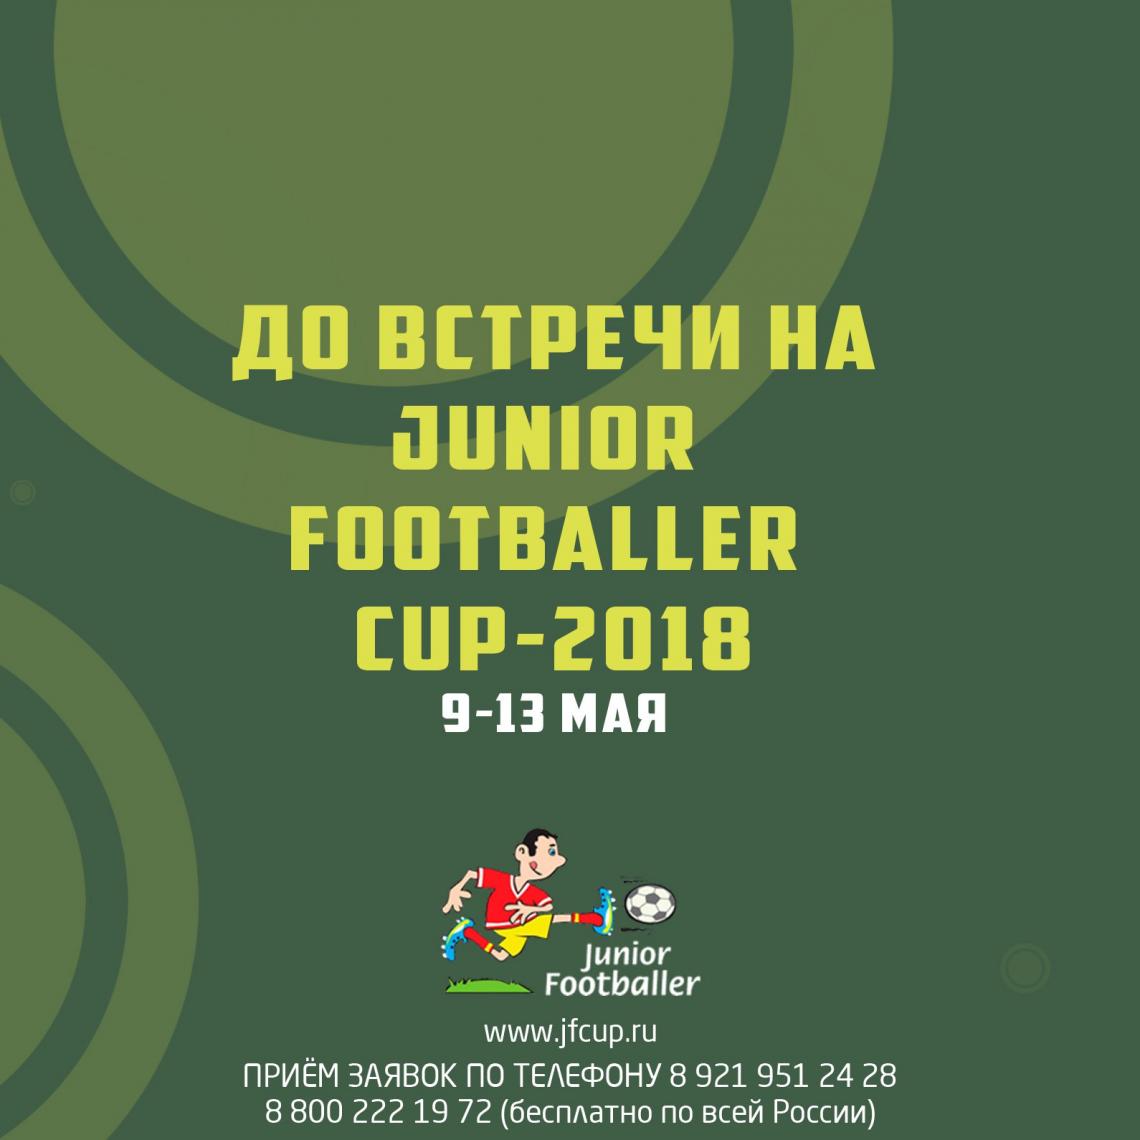 Приём заявок на "JUNIOR FOOTBALLER CUP-2018" СТАРТОВАЛ !  